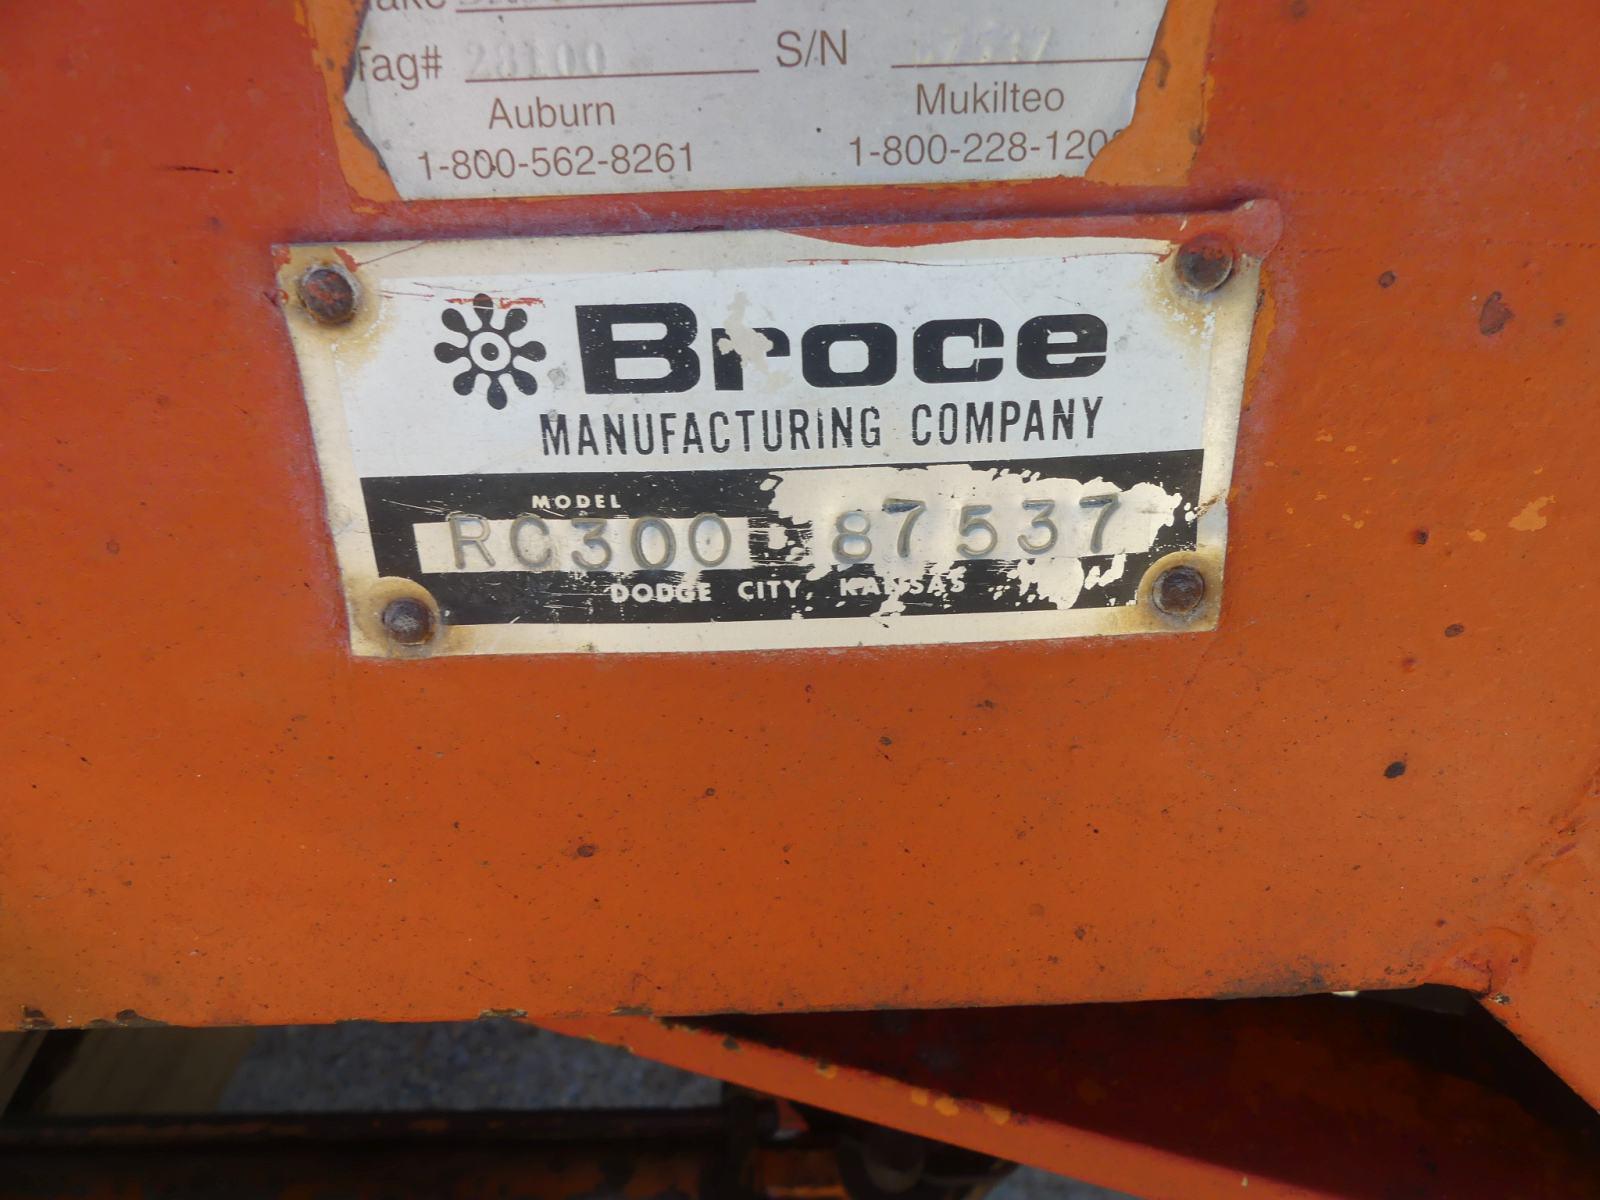 Broce RC300 Sweeper, s/n 87537: Cummins 3.9L Diesel, Water System, Meter Sh